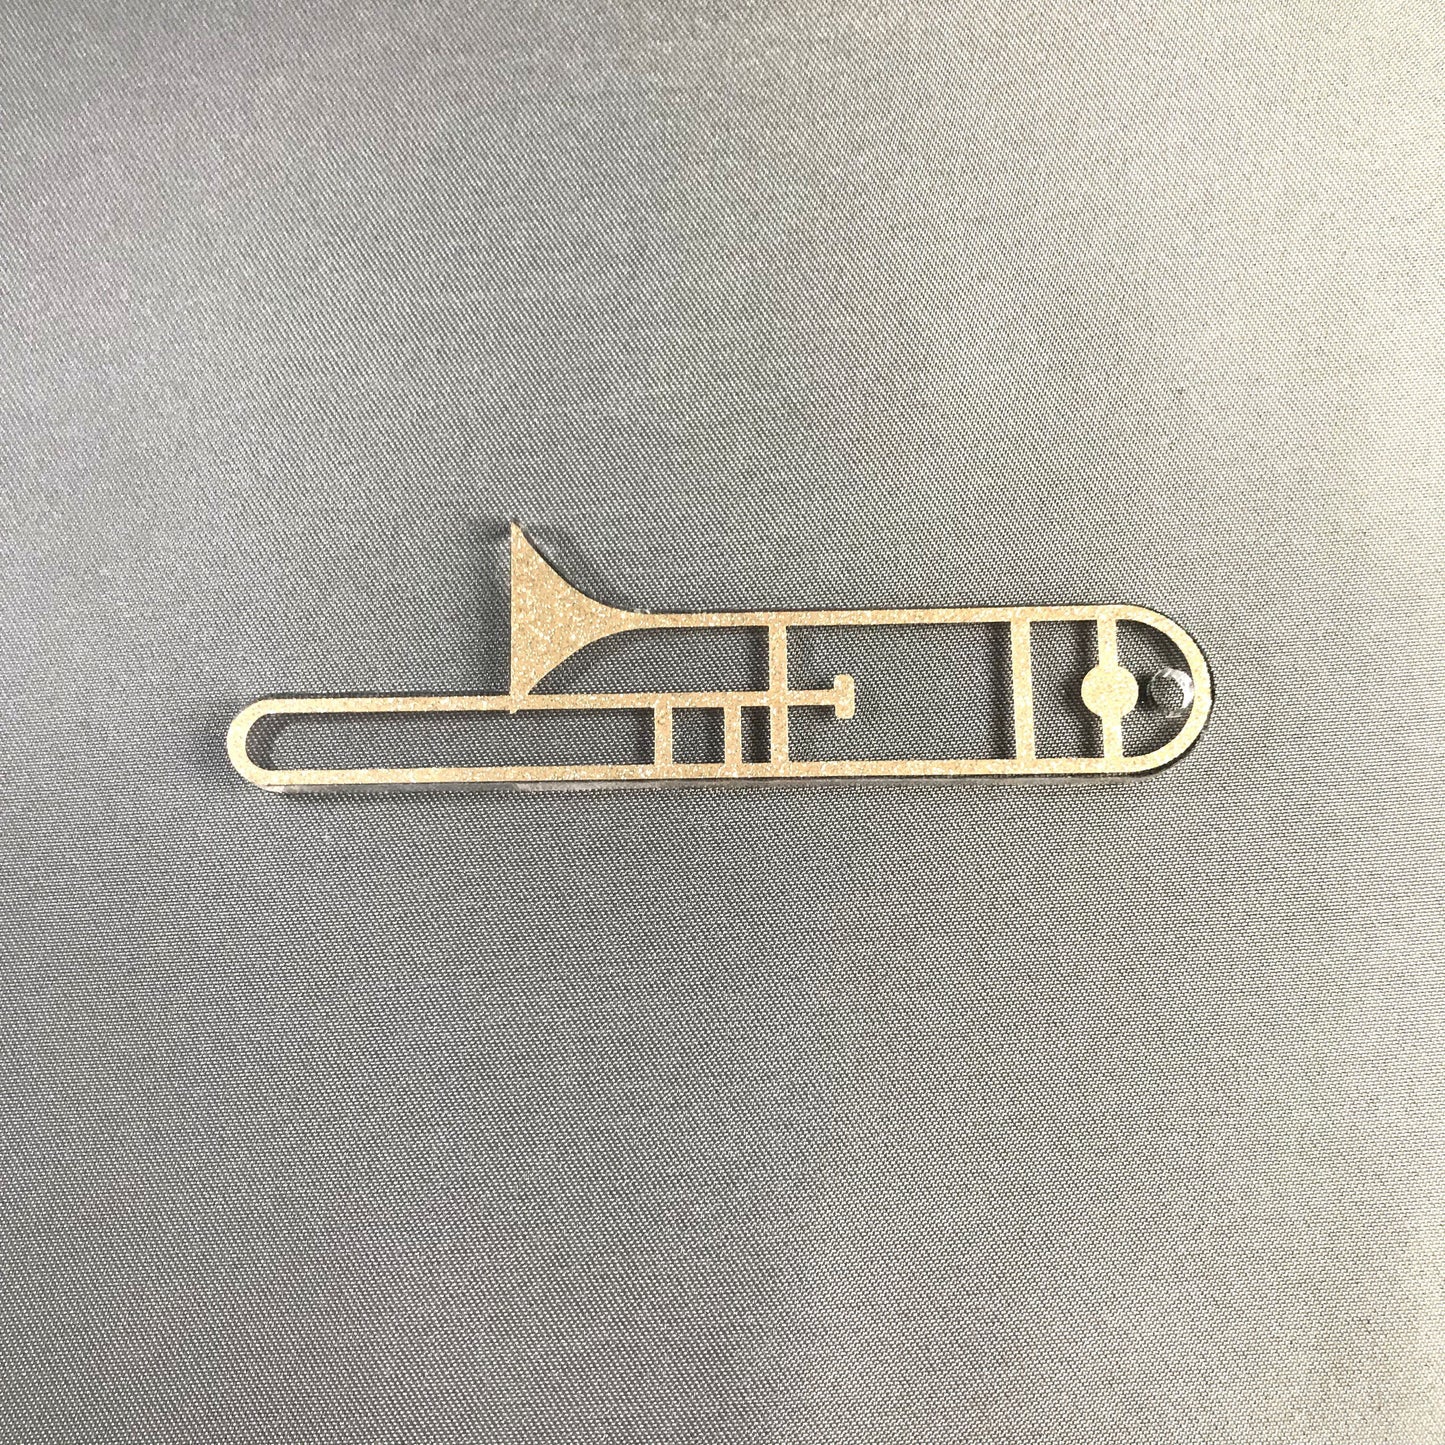 Trombone Blank Acrylic Shape - 3 Inch